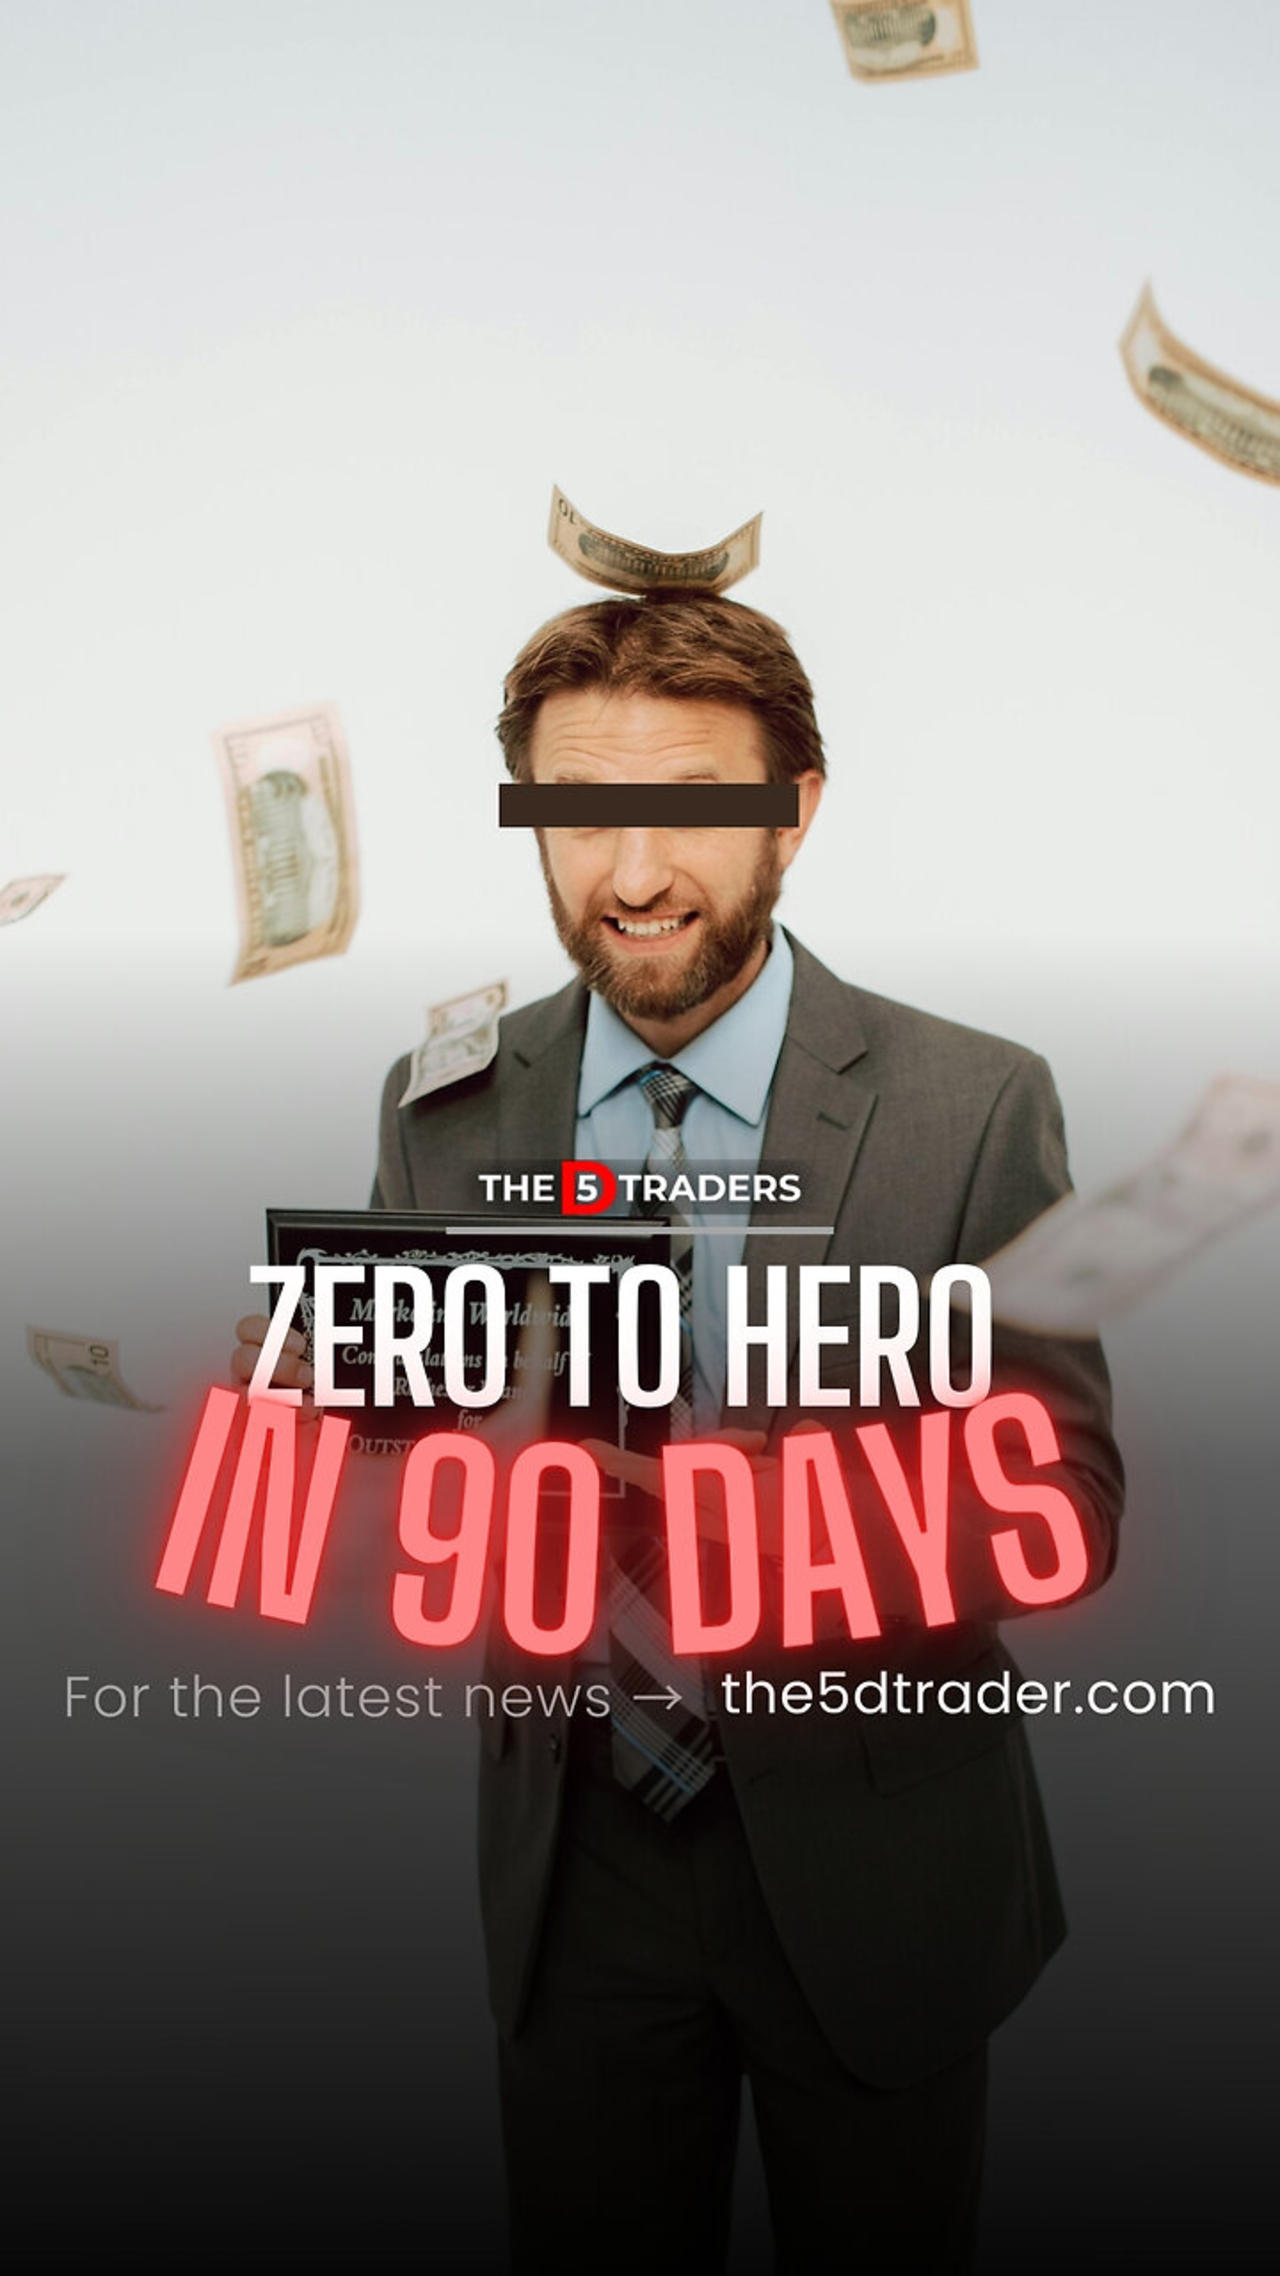 Zero to HERO in 90 days